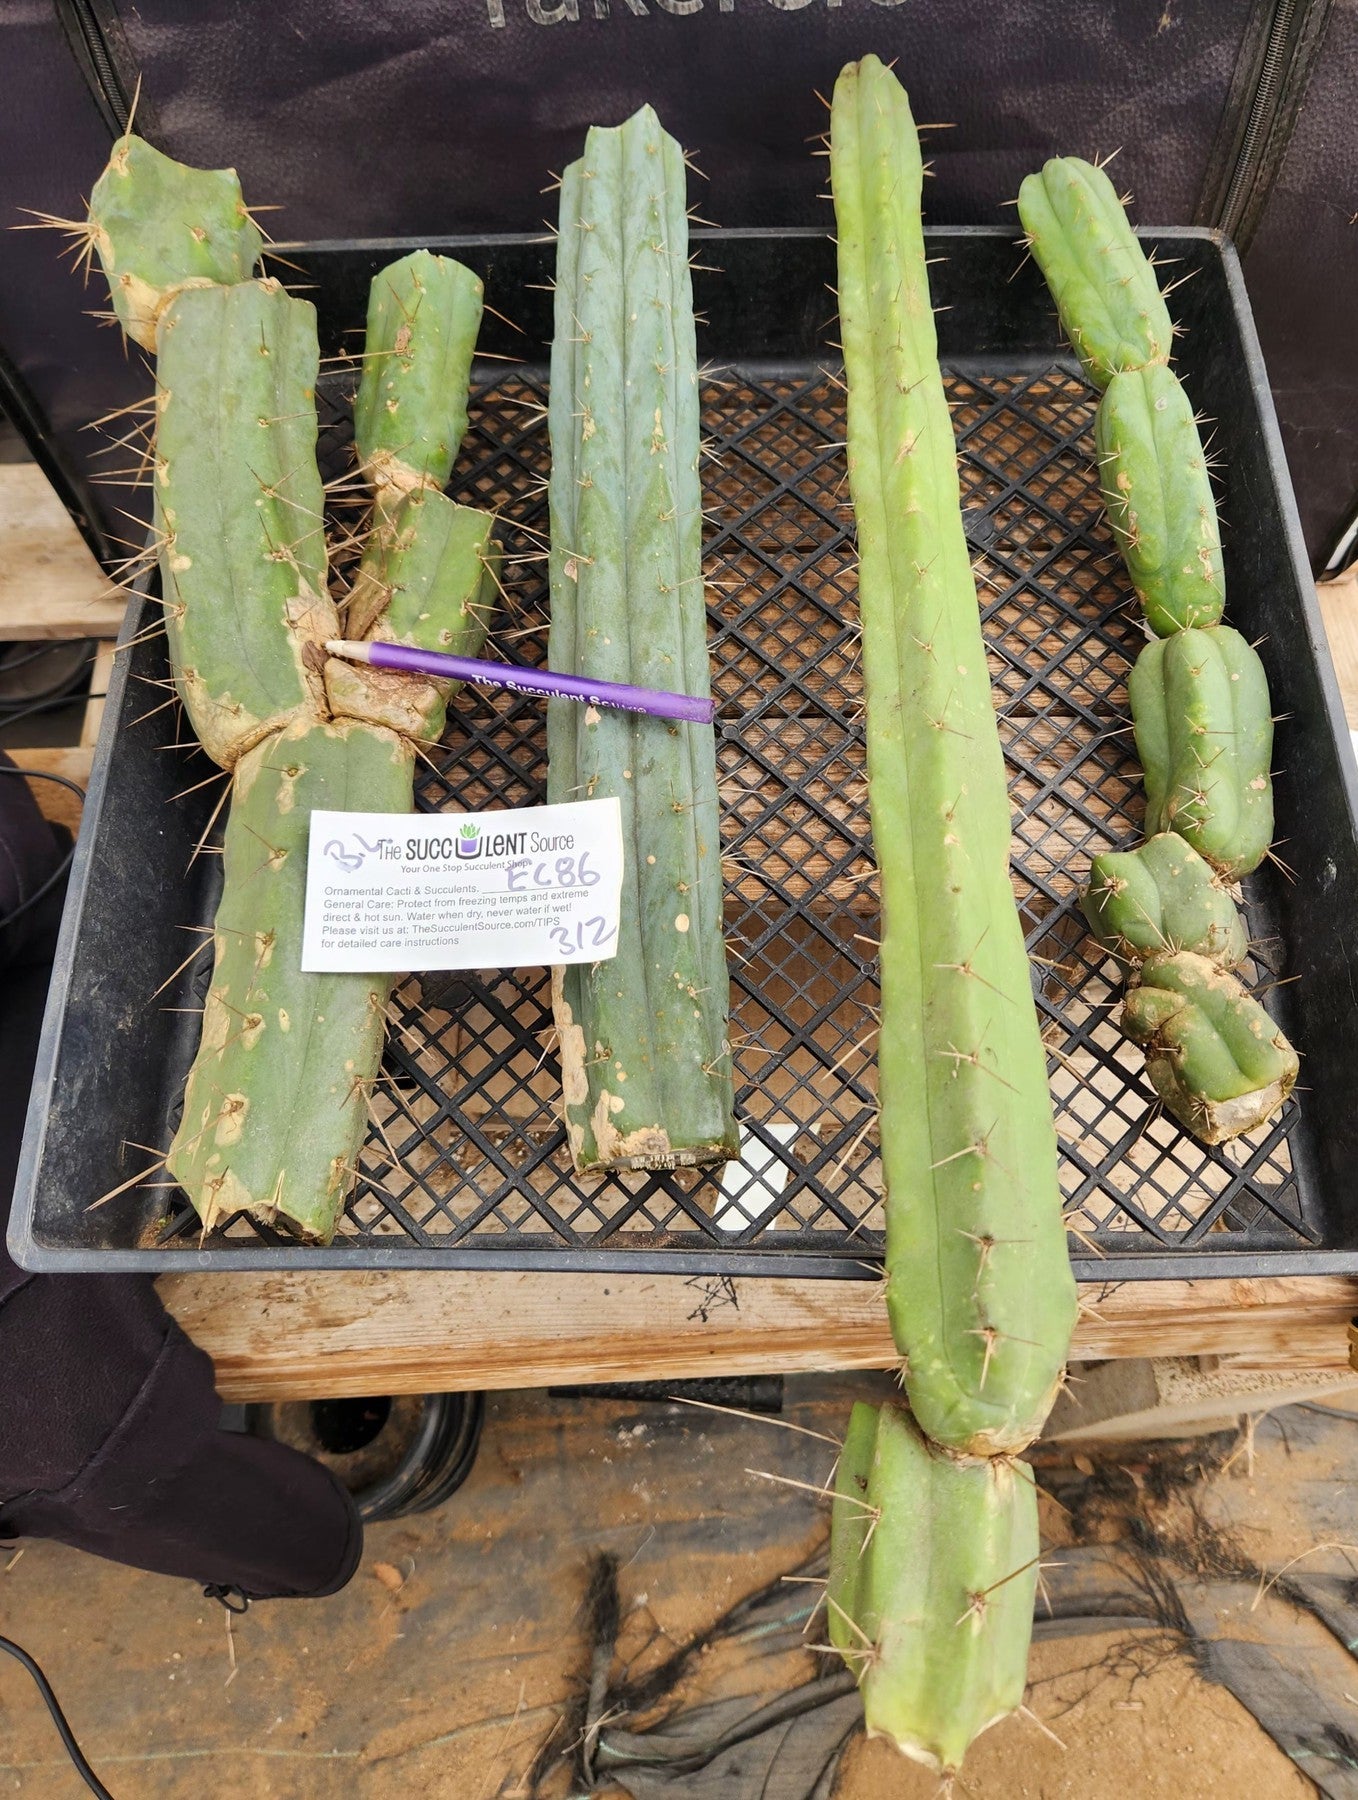 #EC86 EXACT Trichocereus Bridgesii "Jiimz" TLC Ornamental Cactus cuttings-Cactus - Large - Exact-The Succulent Source